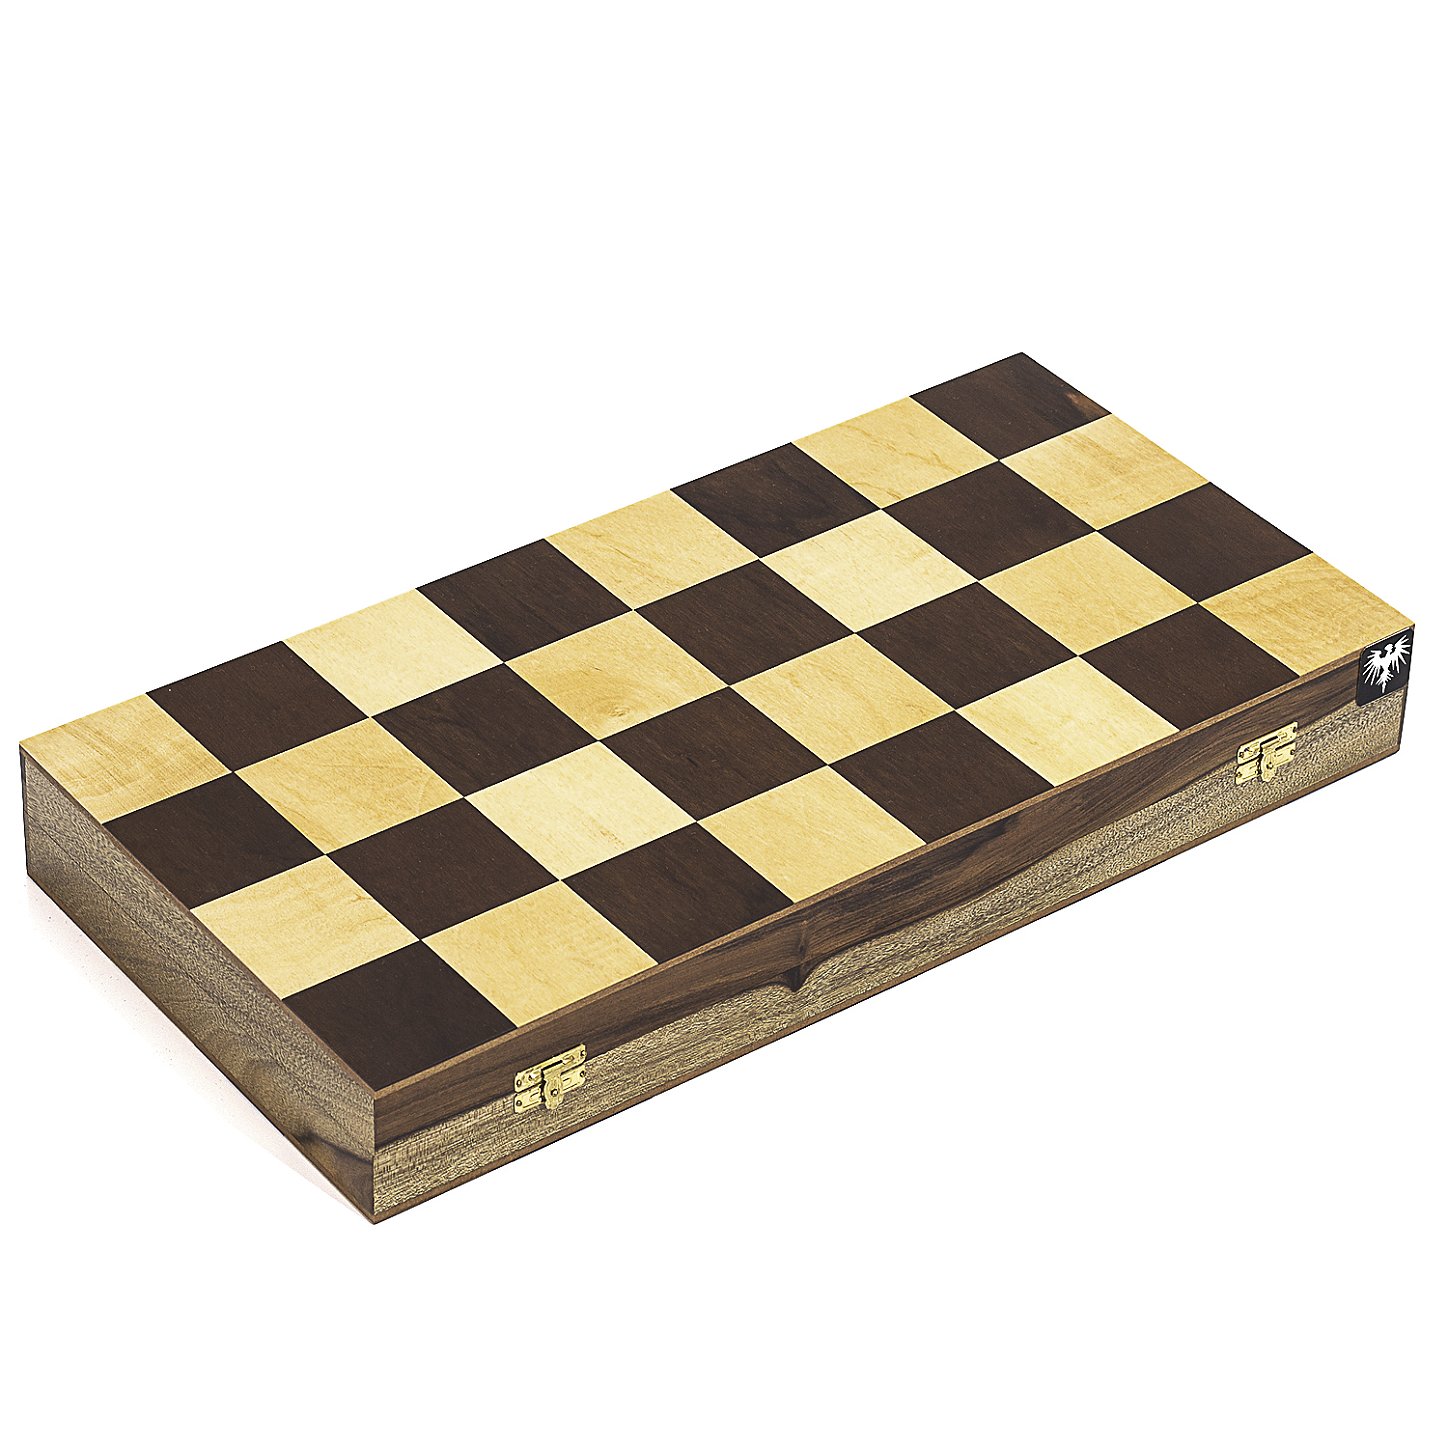 5 volumes de xadrez iniciantes básico layout raiders matar técnicas endgame  cracking assista o jogo de